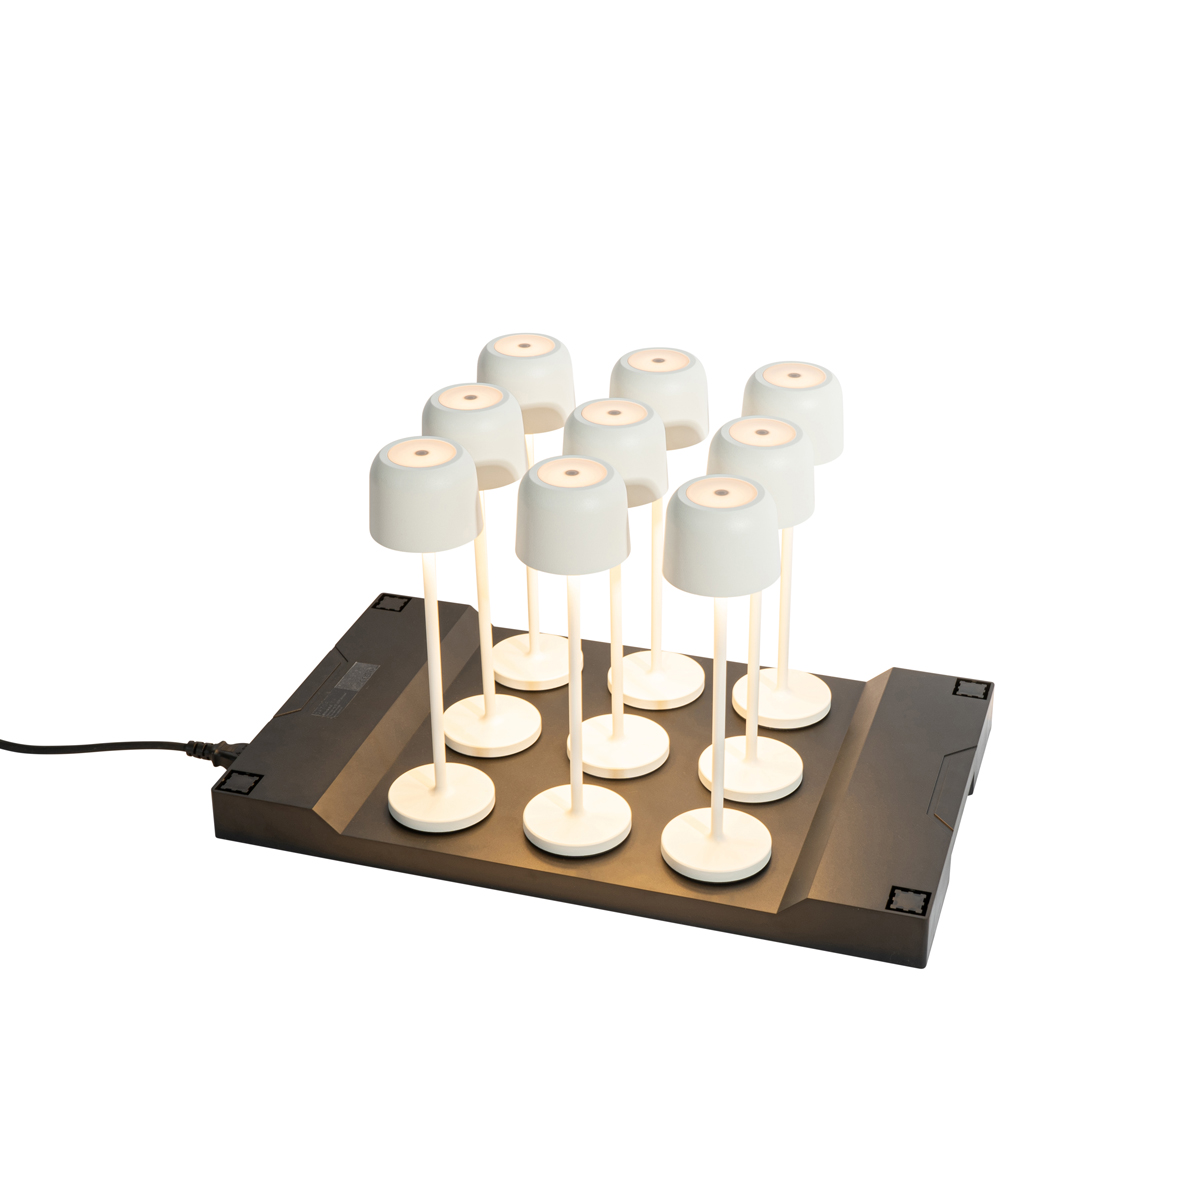 9 db-os készlet újratölthető asztali lámpa gomba színű, töltőállomással - Raika